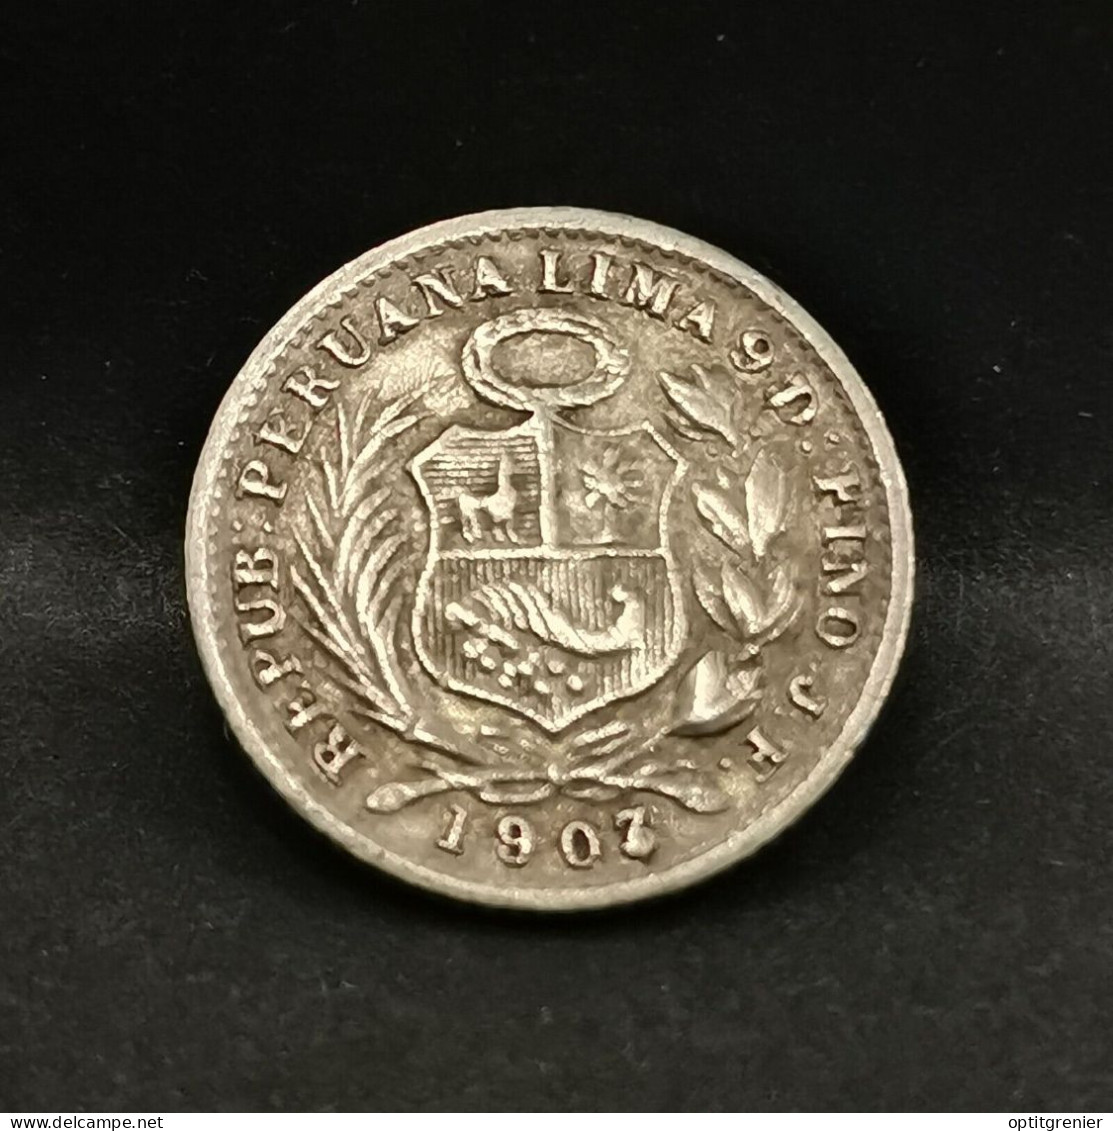 1/2 DINERO ARGENT 1903 LIMA PEROU / PERU SILVER - Peru